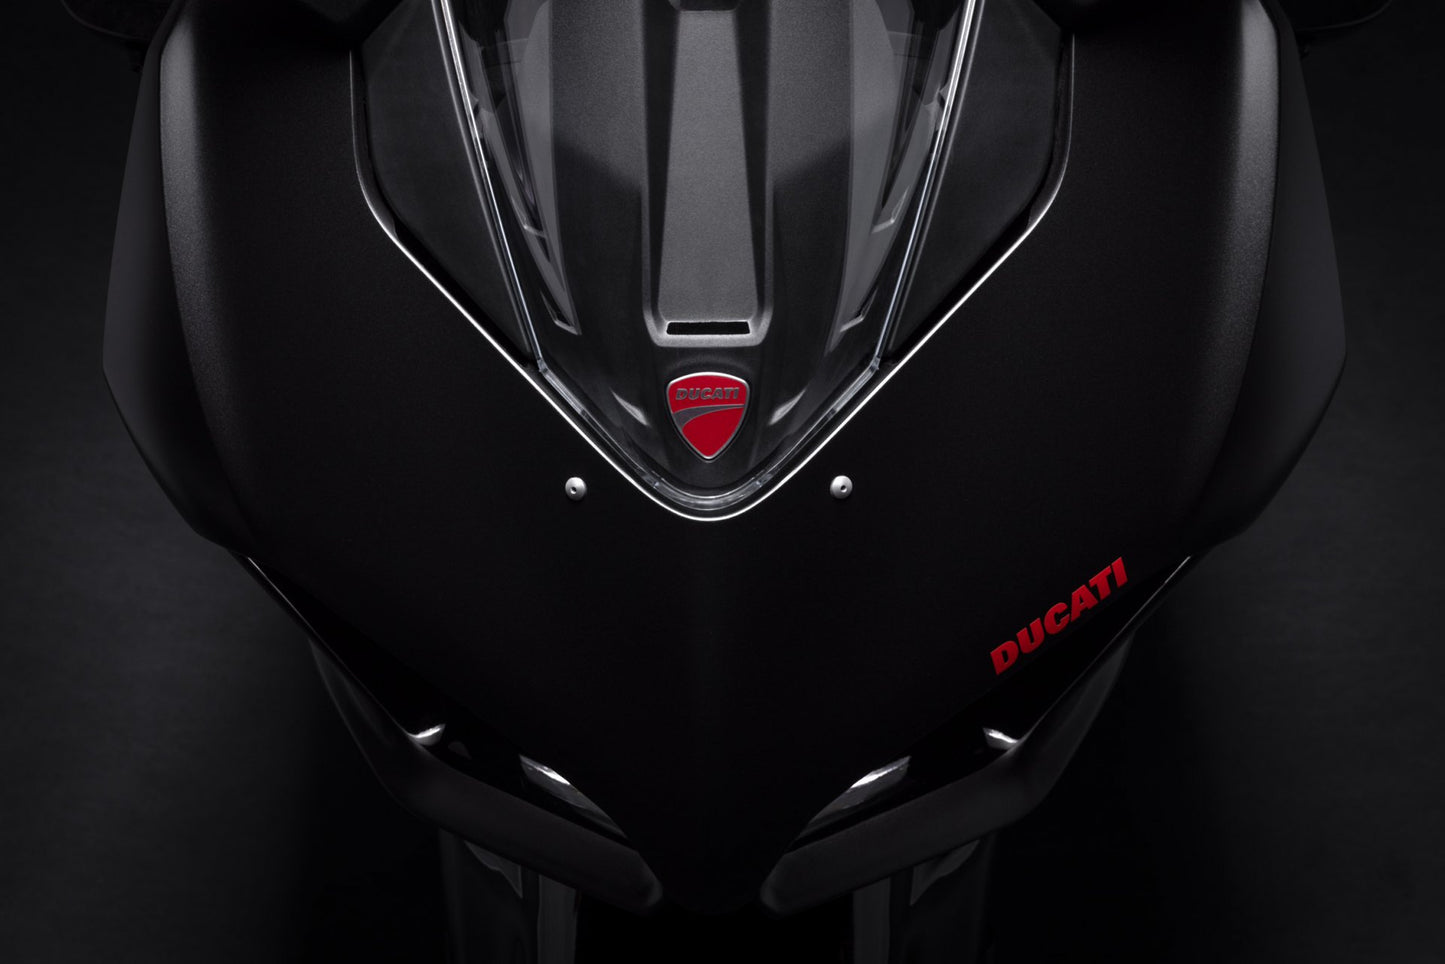 Ducati Panigale V2 - Black on Black Pre-Order